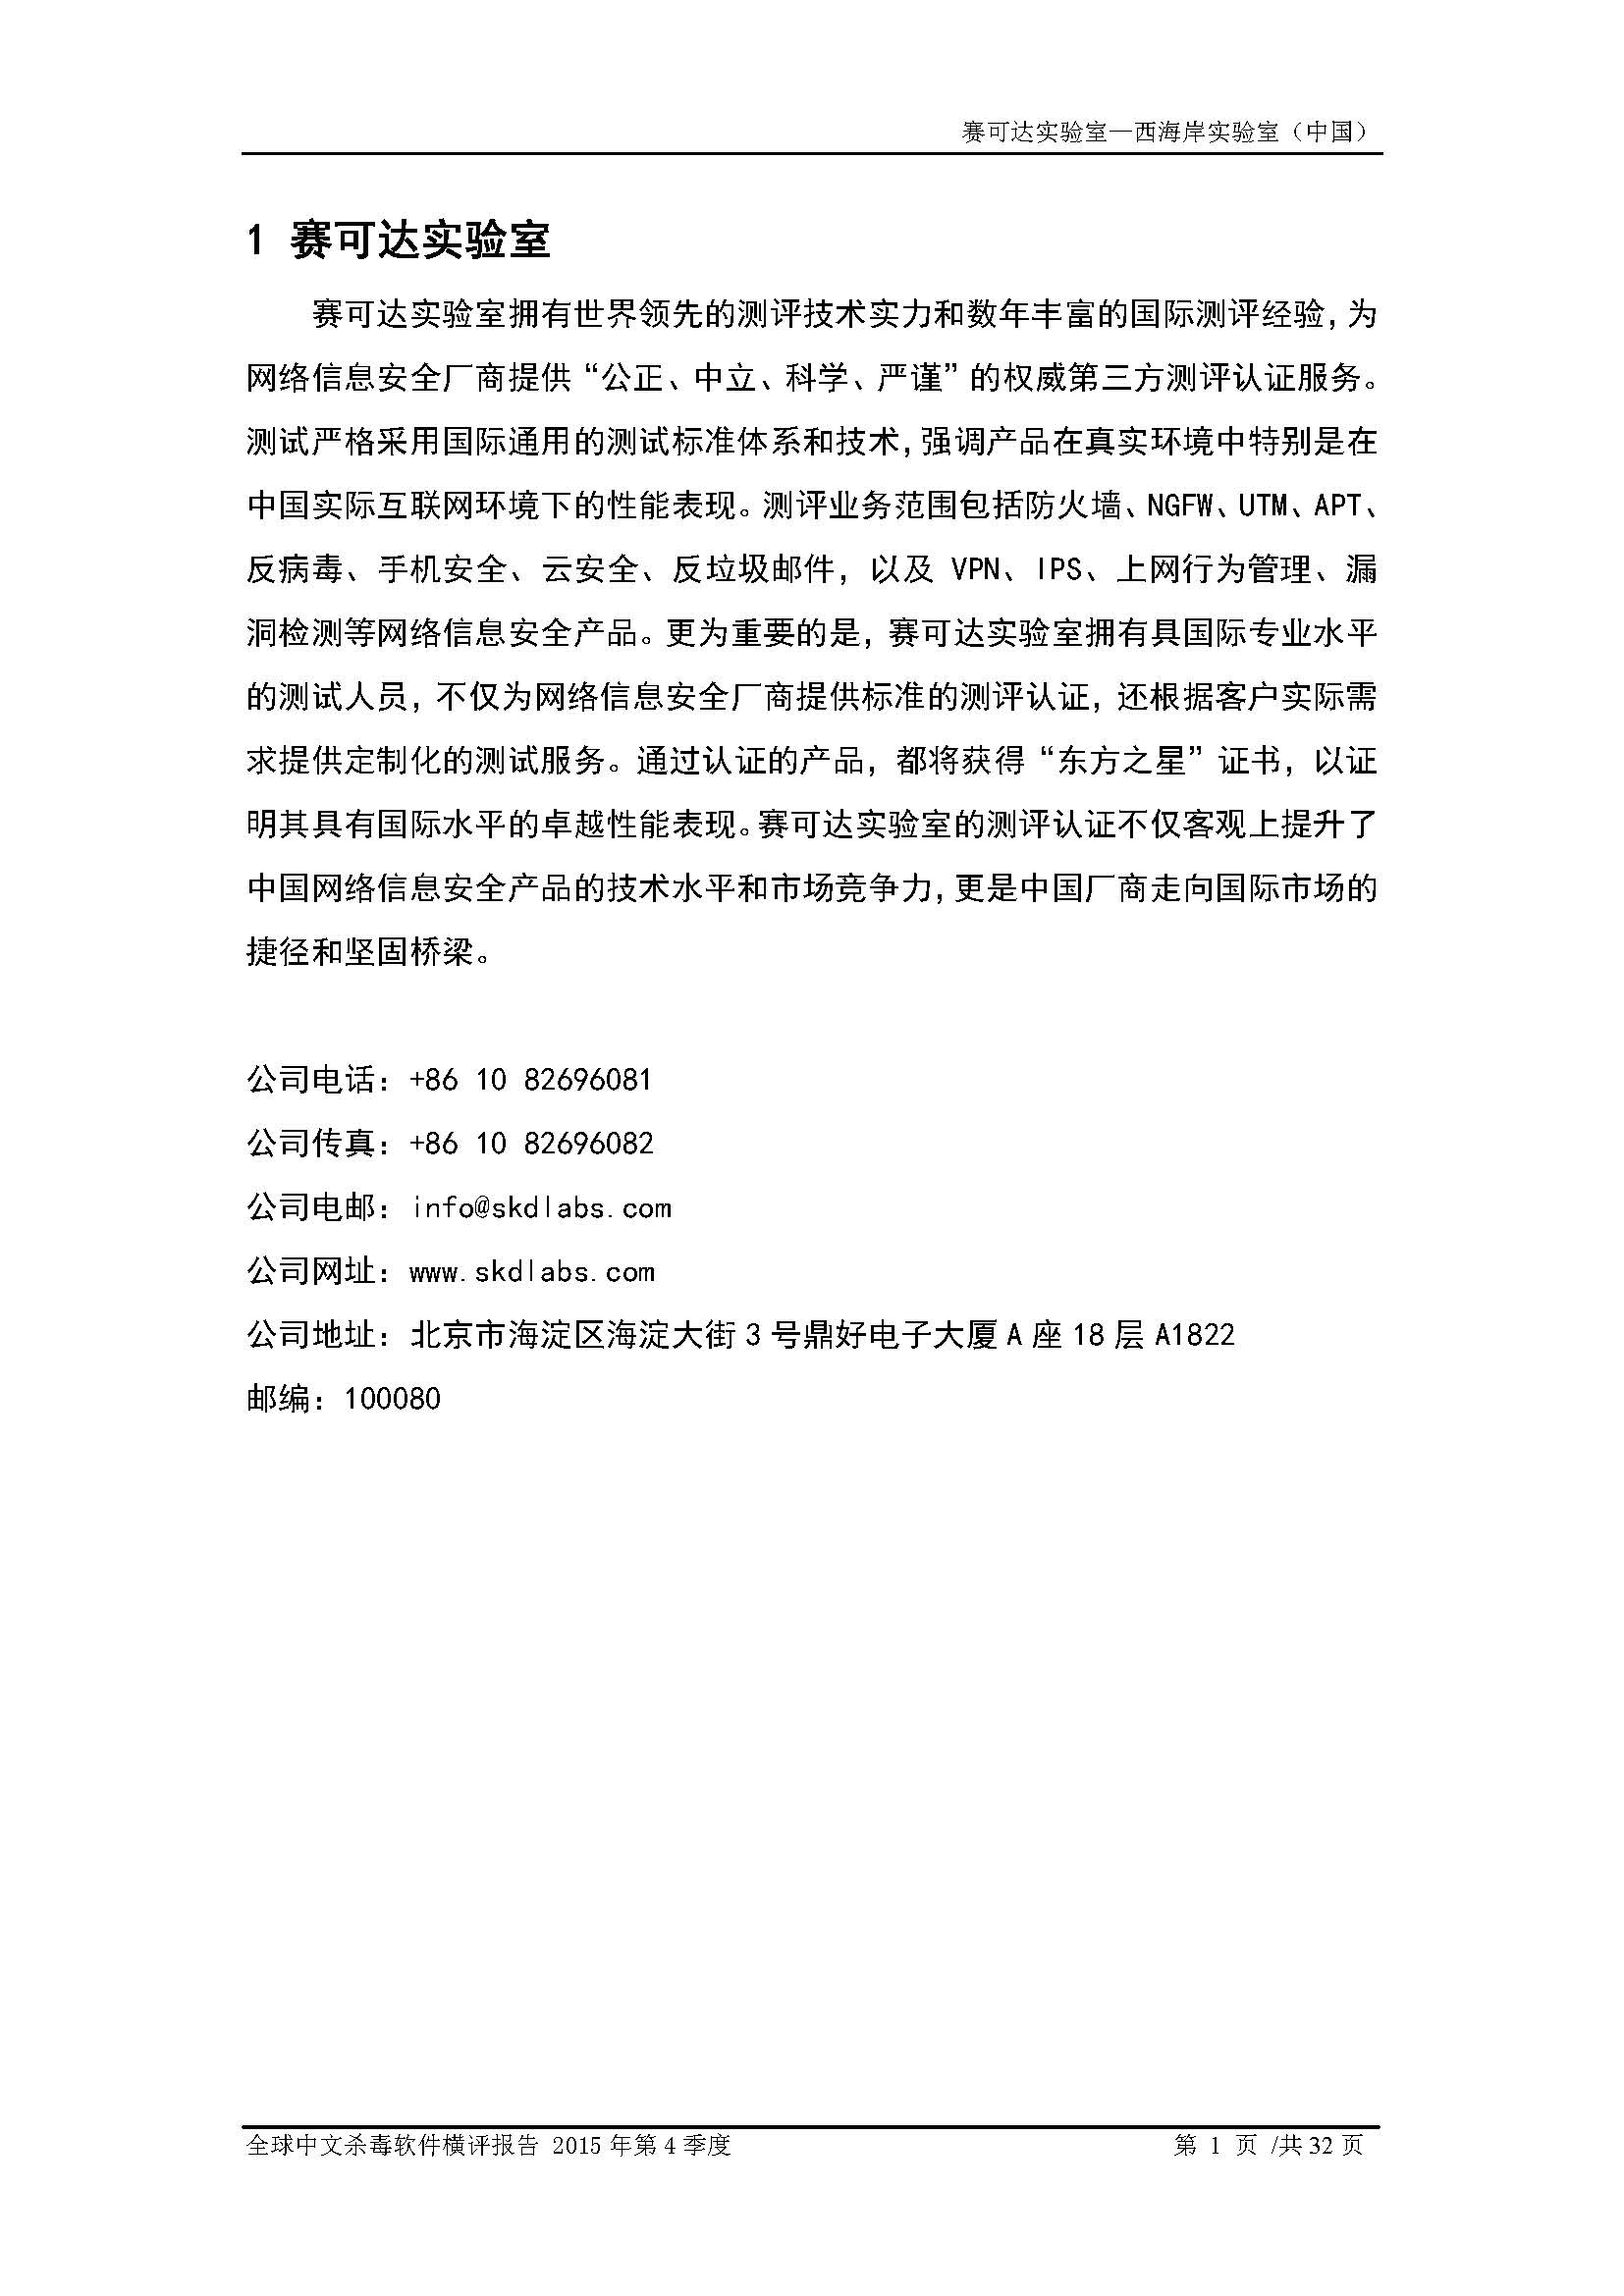 中文PC杀毒软件横评测试报告- Windows 8.1【中文版】.pdf (_Page_03.jpg